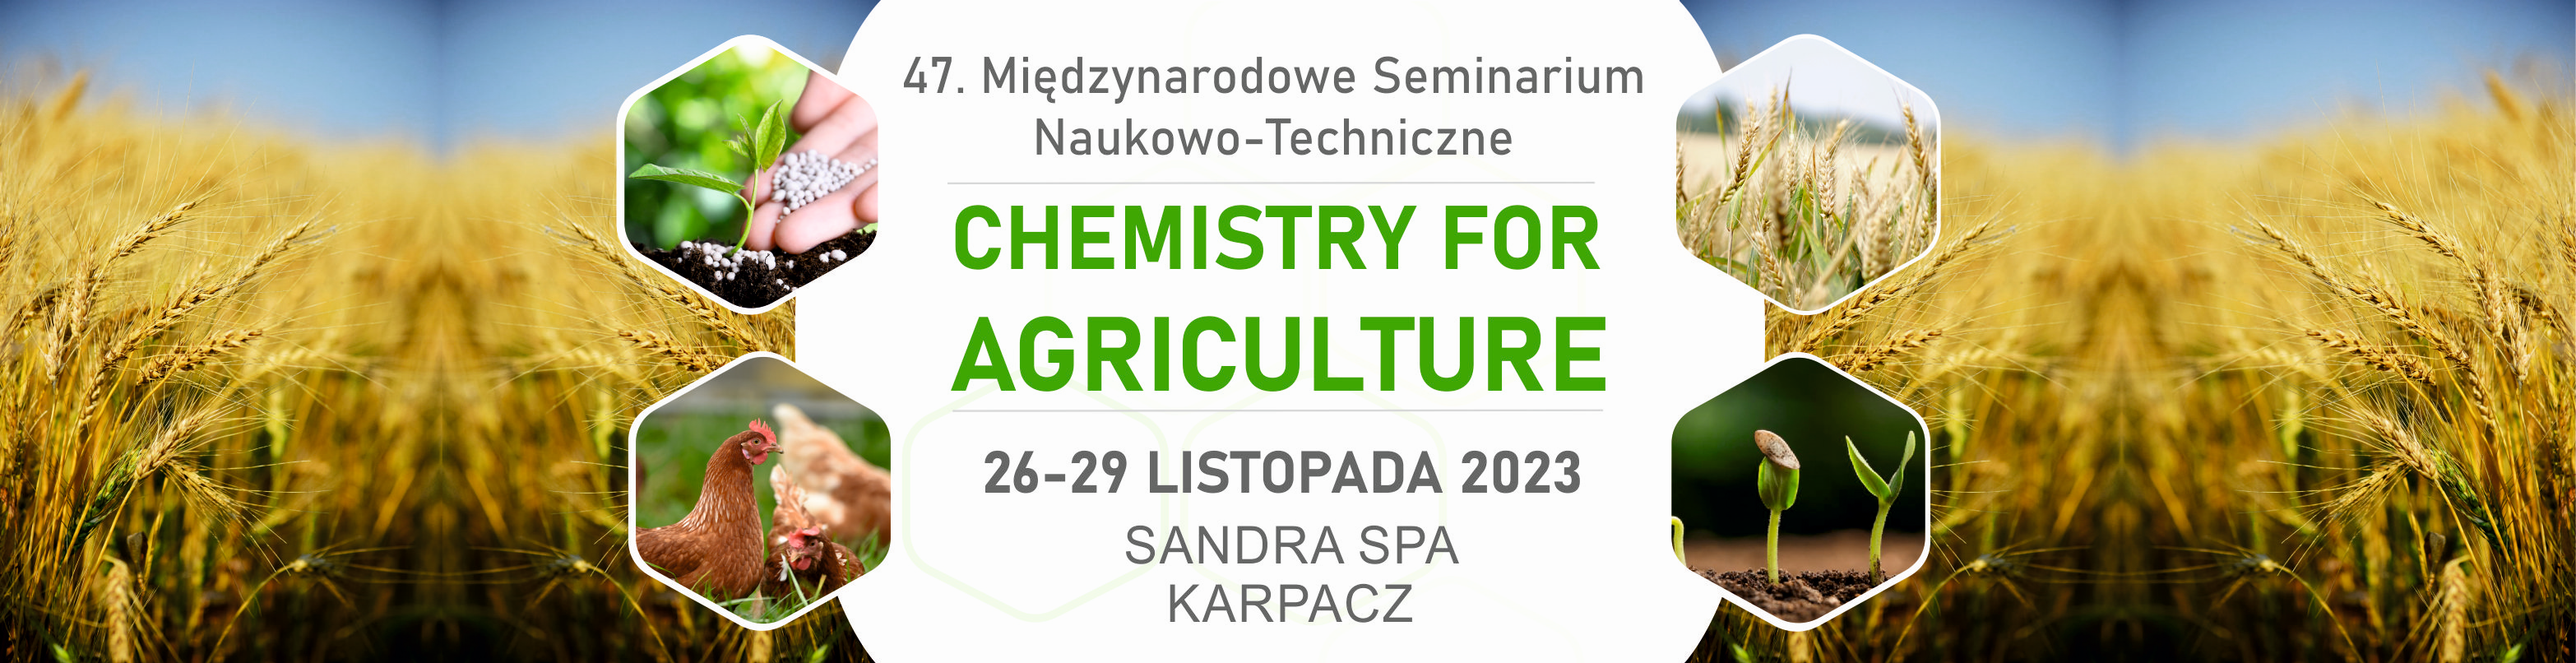 XLVII Międzynarodowe Seminarium Naukowo- Techniczne "Chemistry for agriculture"